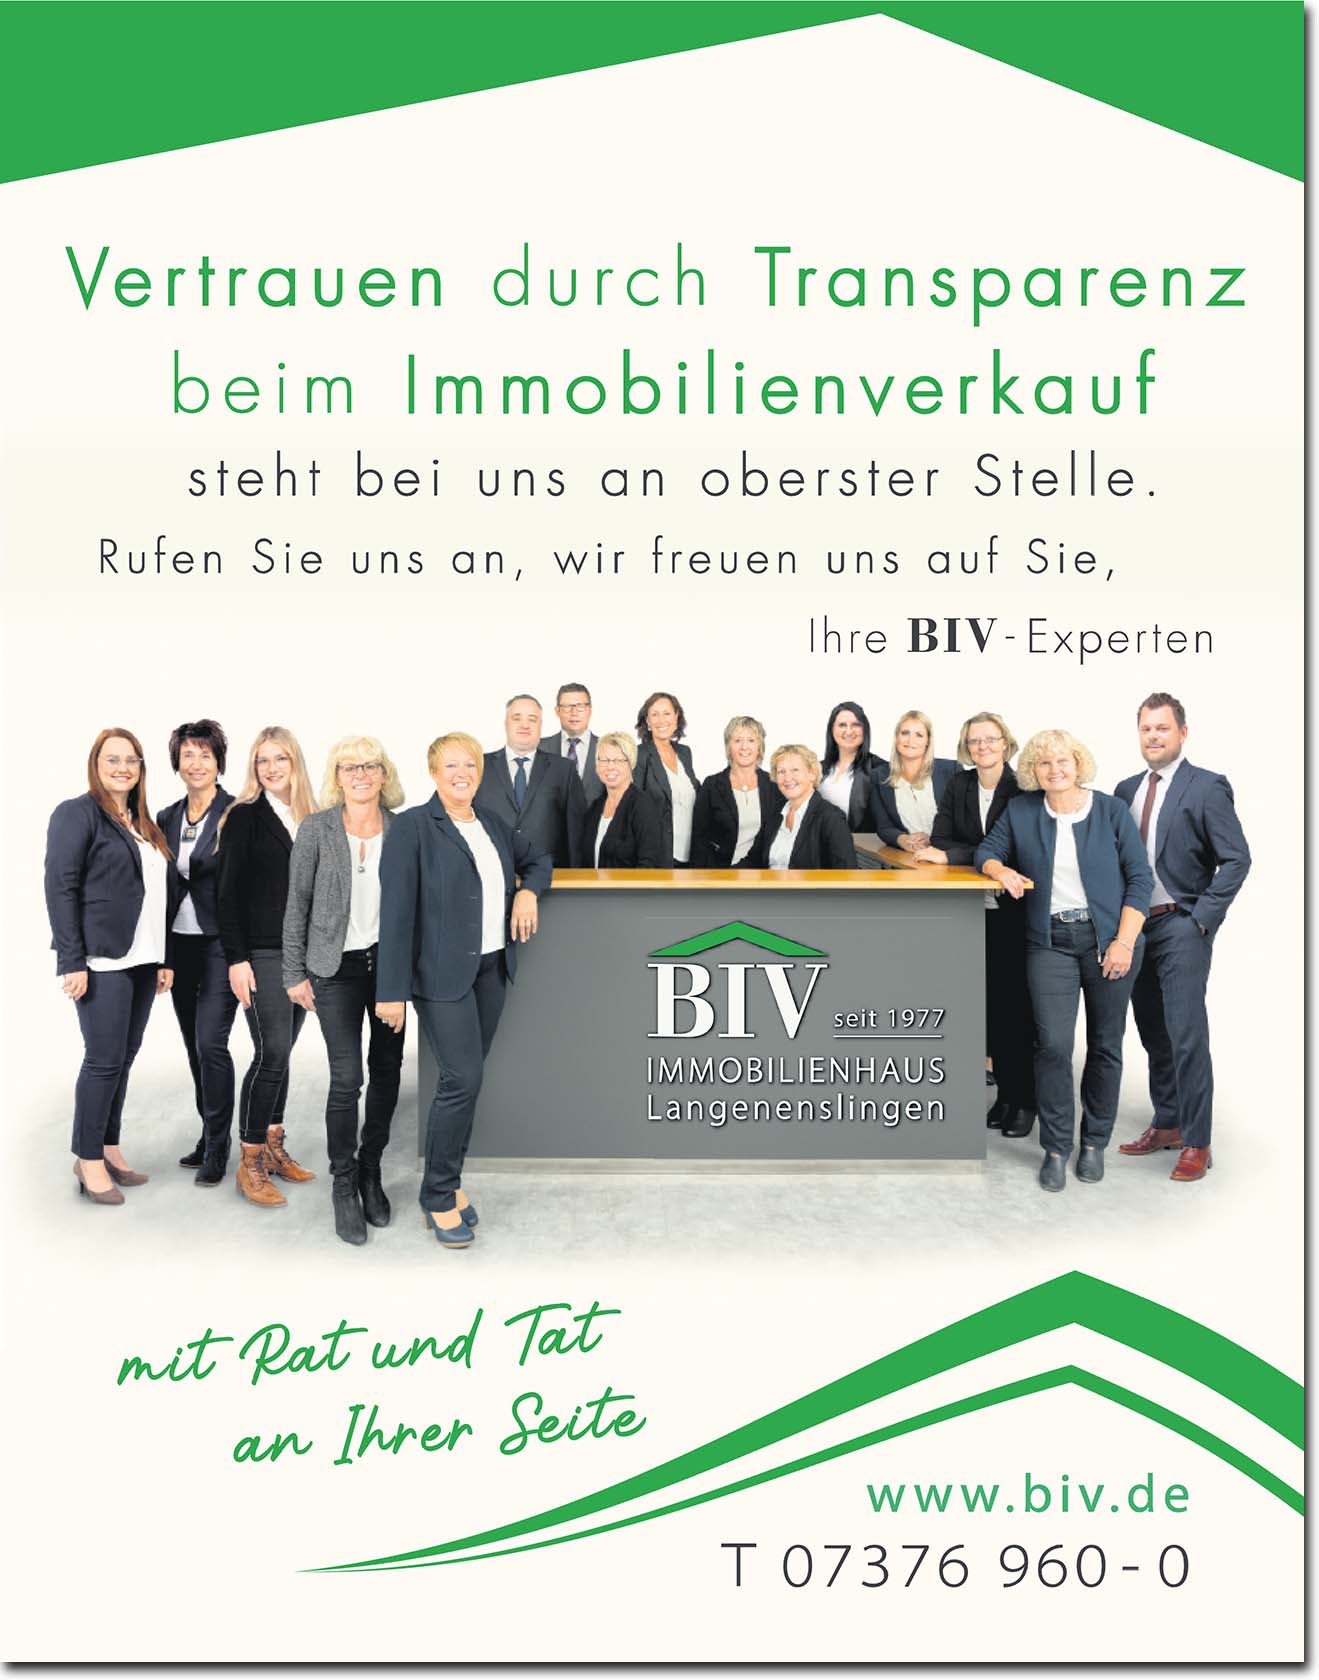 BIV GmbH